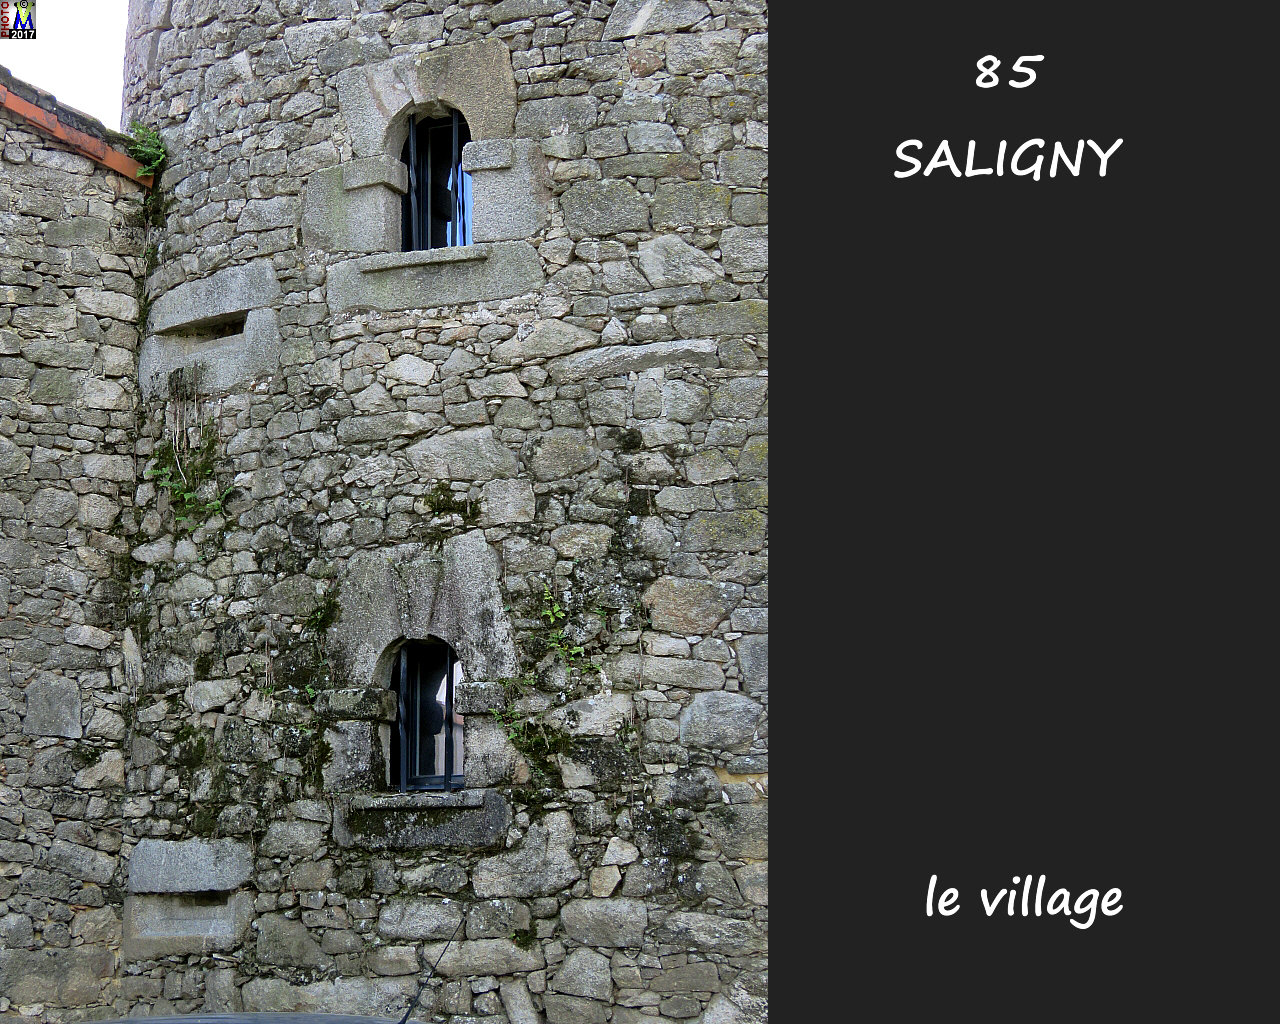 85SALIGNY_village_106.jpg